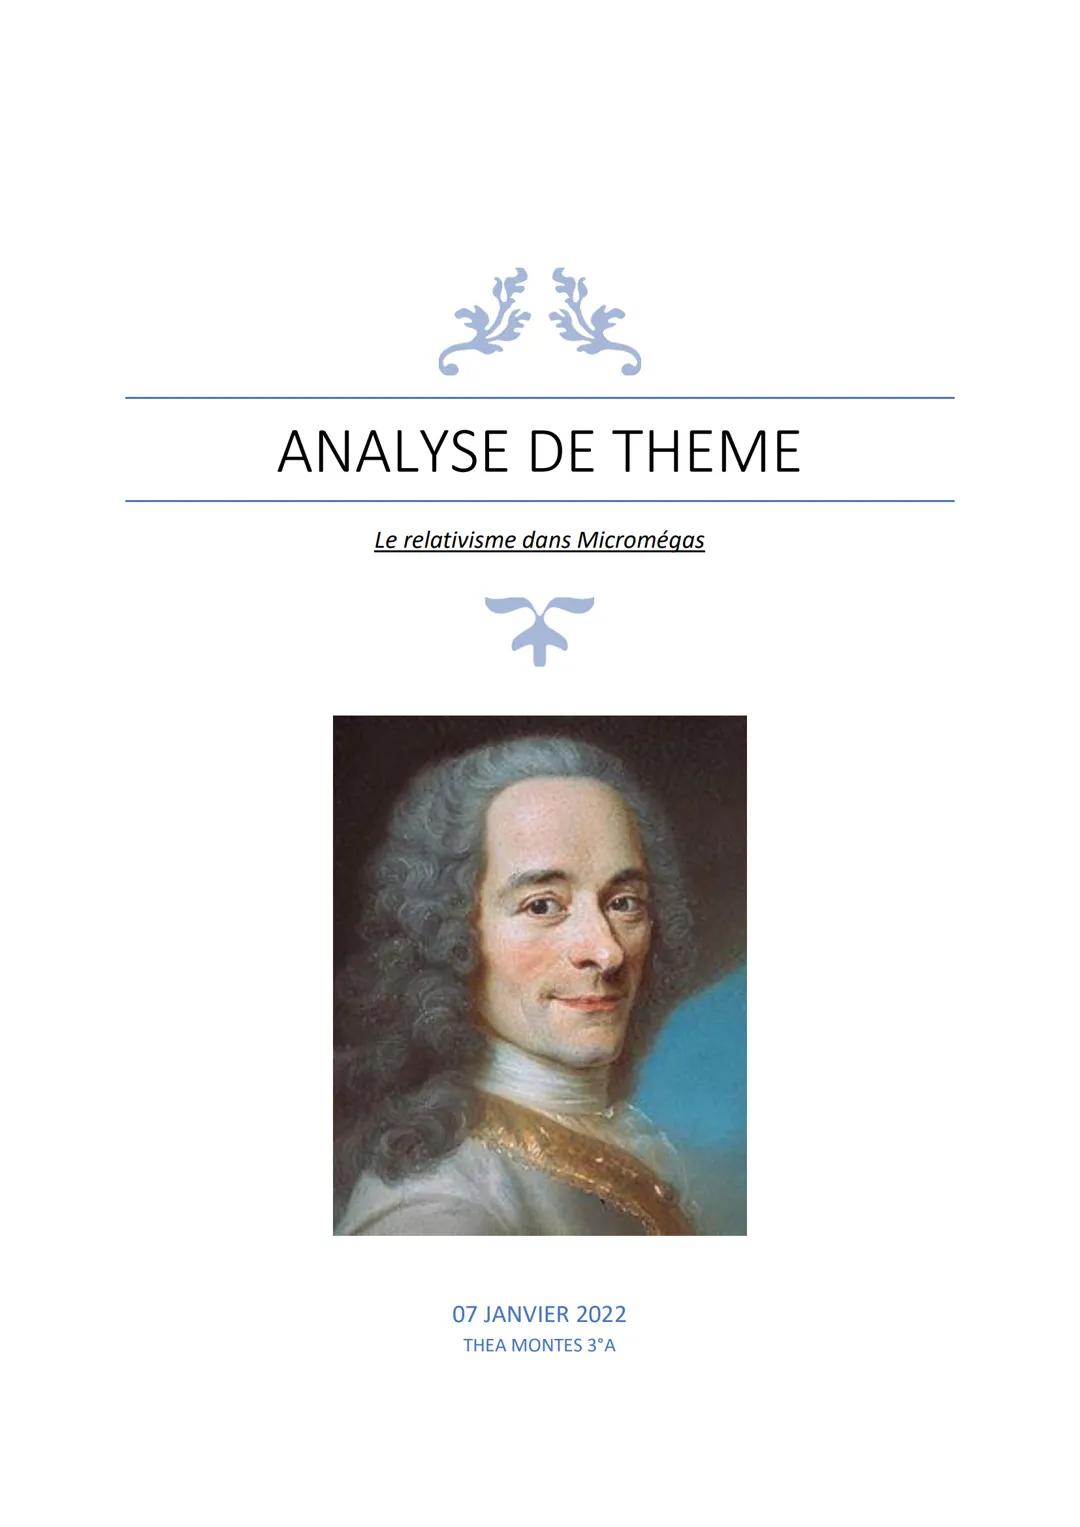 ANALYSE DE THEME
Le relativisme dans Micromégas
07 JANVIER 2022
THEA MONTES 3°A Biographie de Voltaire :
Voltaire (son vrai nom étant Franço